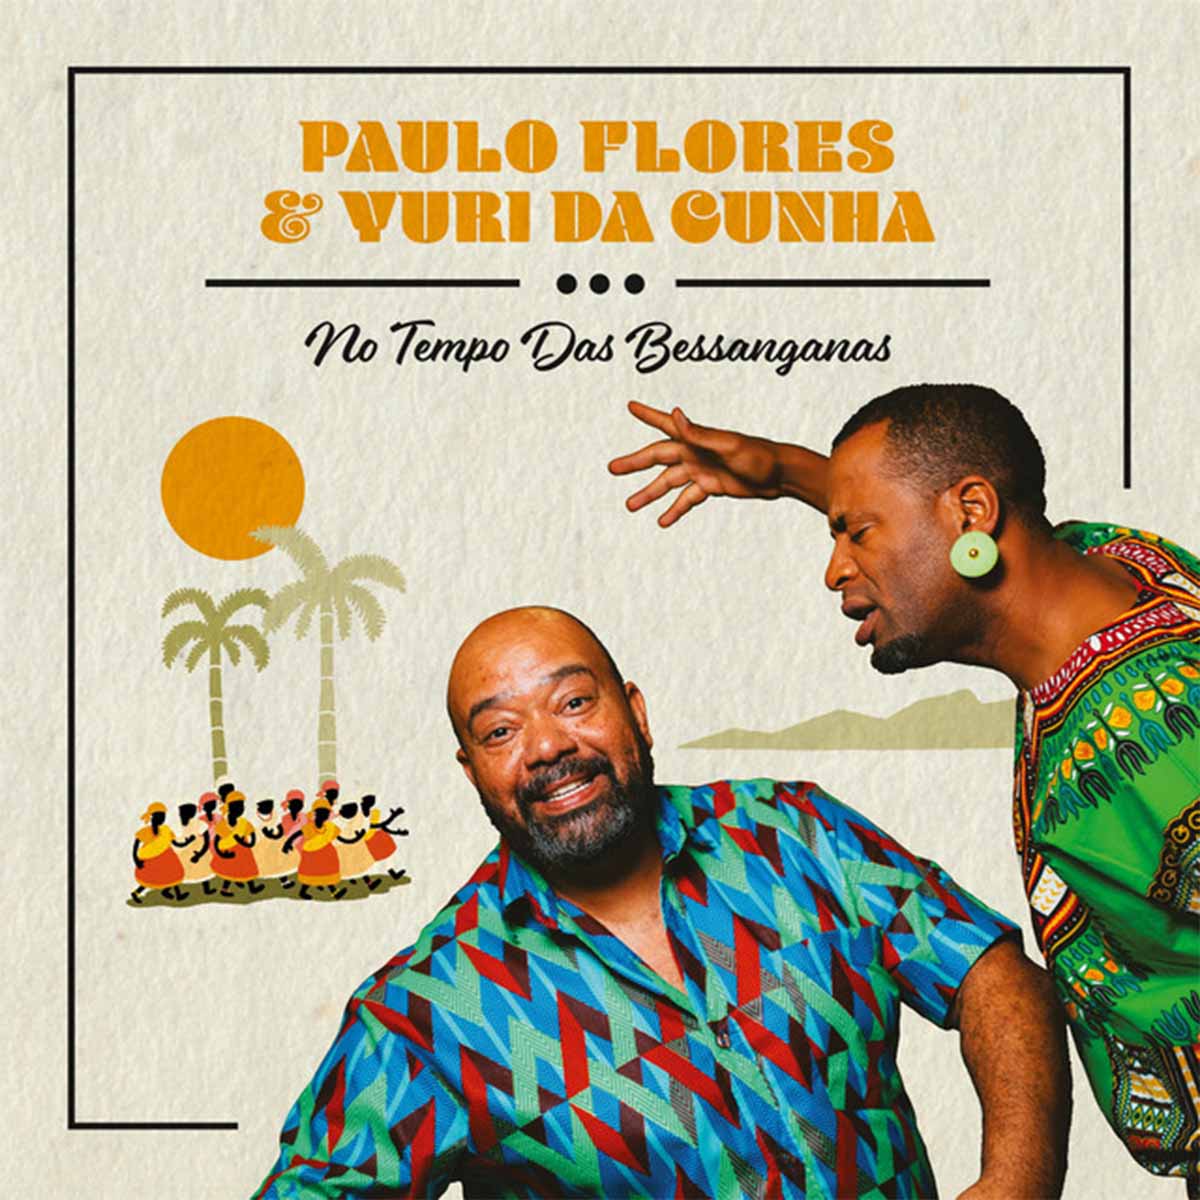 Paulo Flores e Yuri da Cunha – Vamos ficar como papá nos deixou